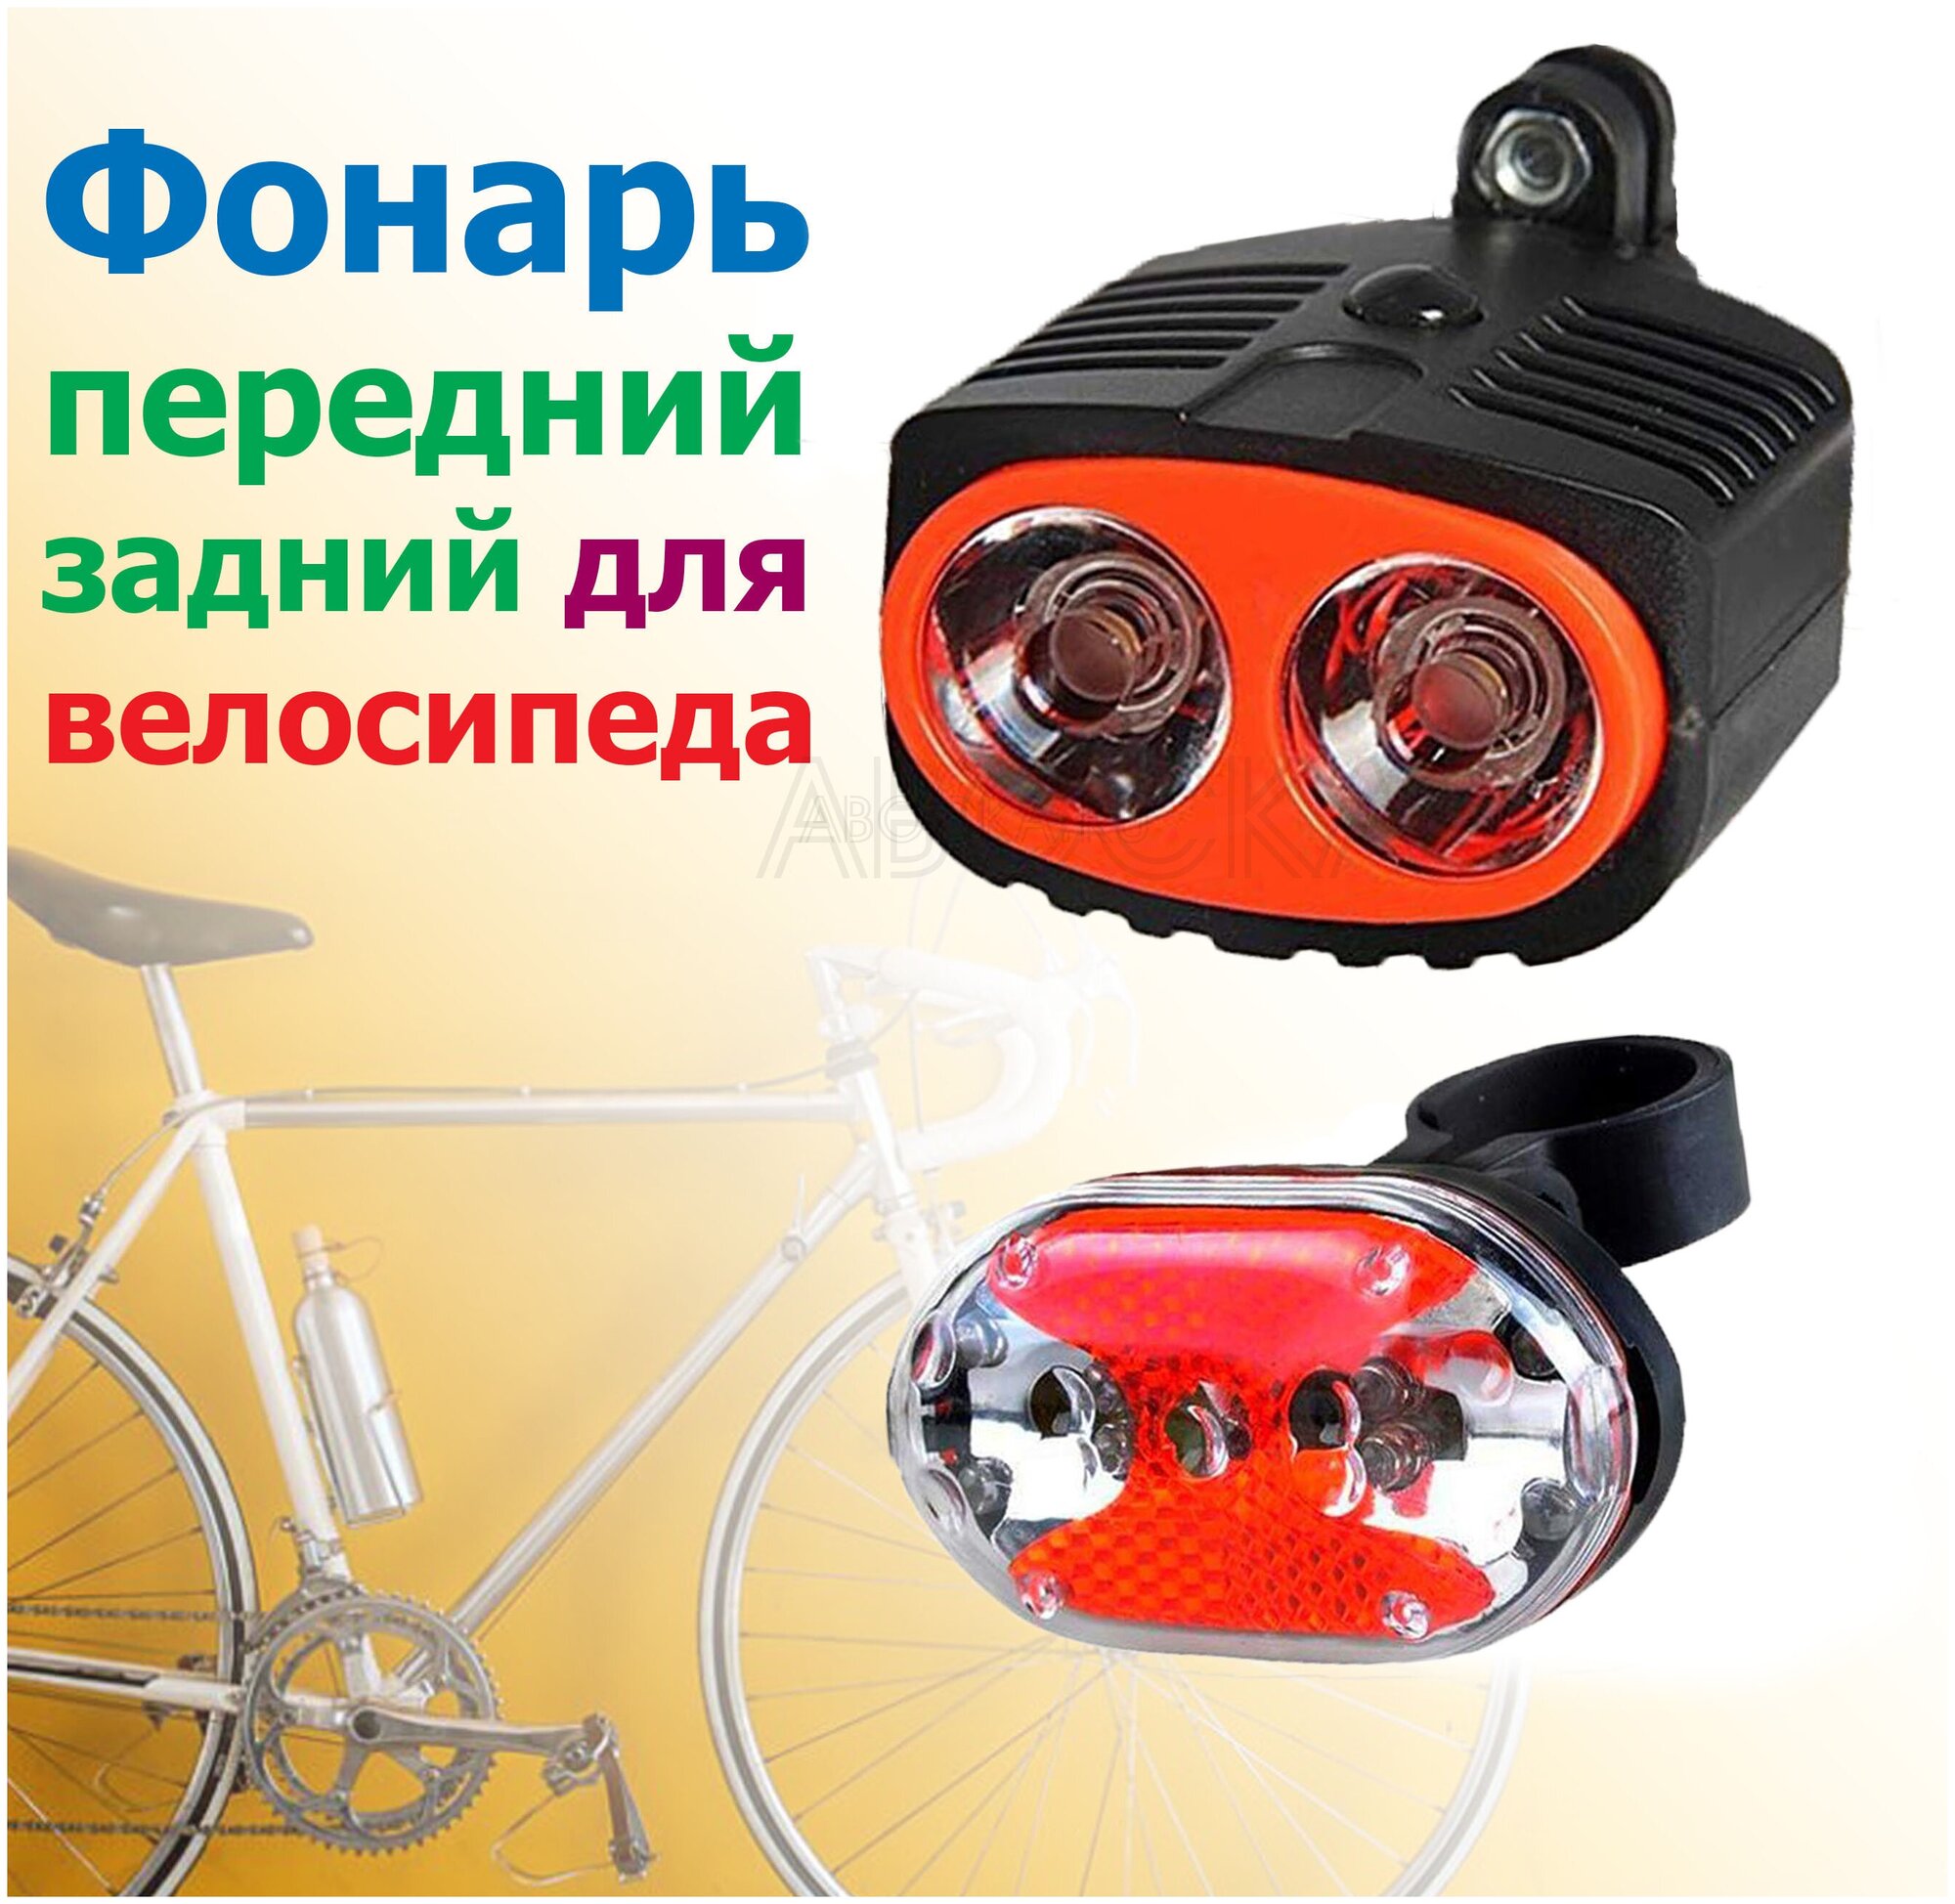 Велосипедный фонарь (передний + задний) TD|516/на батарейках/красный